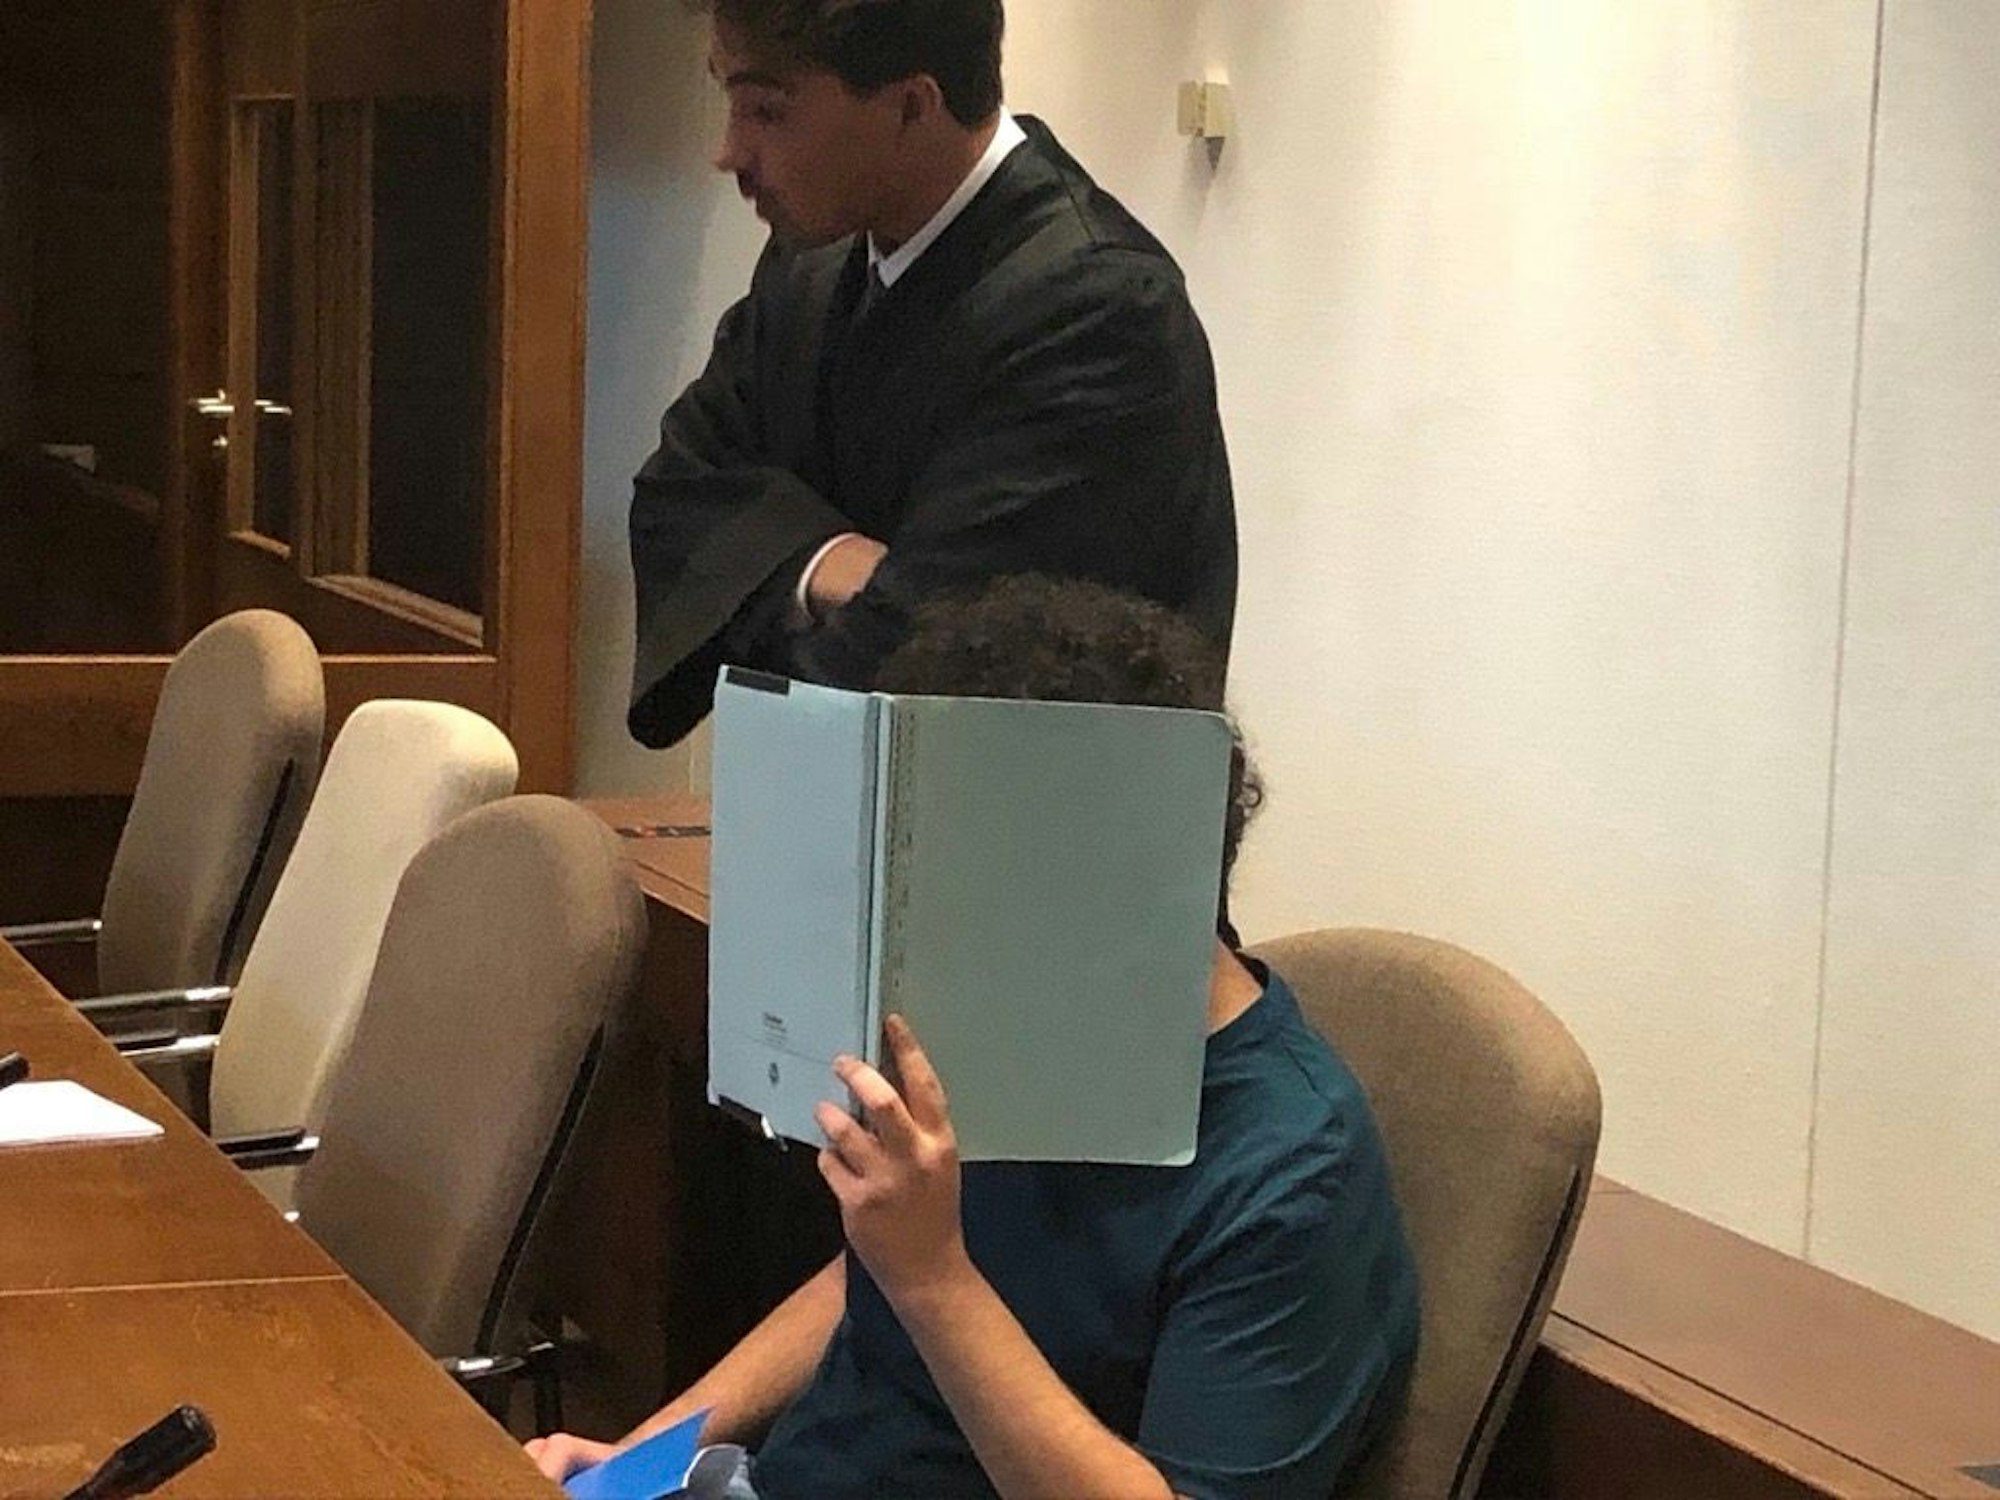 Ein Angeklagter vor Gericht hält sich einen Ordner vor das Gesicht, um auf Fotos nicht erkennbar zu sein.